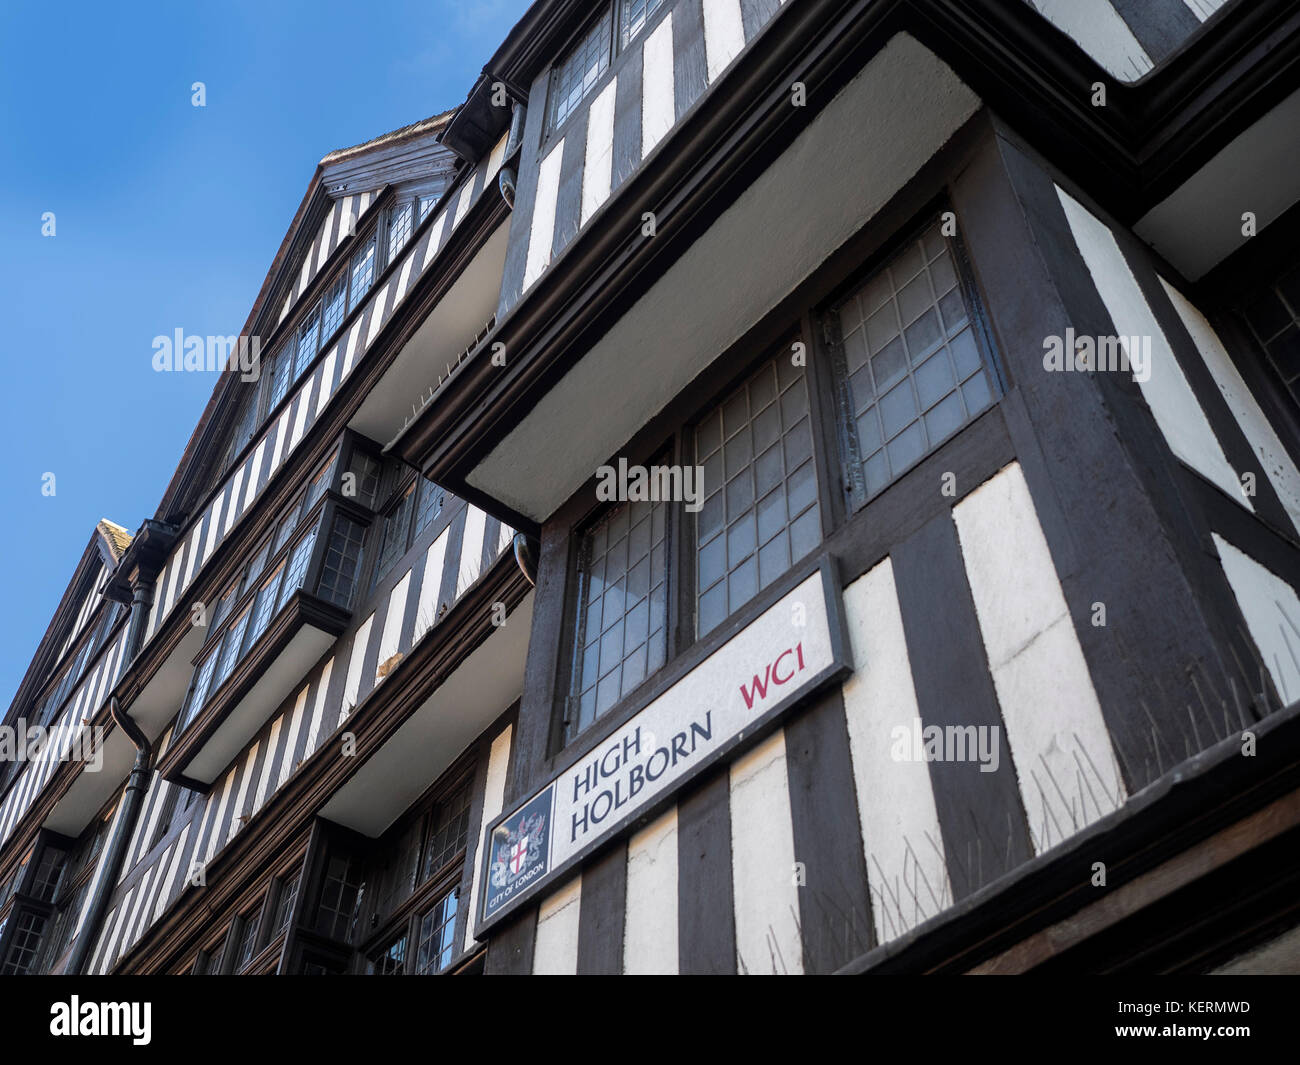 STAPLE INN BUILDING, HIGH HOLBORN, LONDON:  High Holborn Street Sign on the Tudor Grade 1 Listed Building Stock Photo